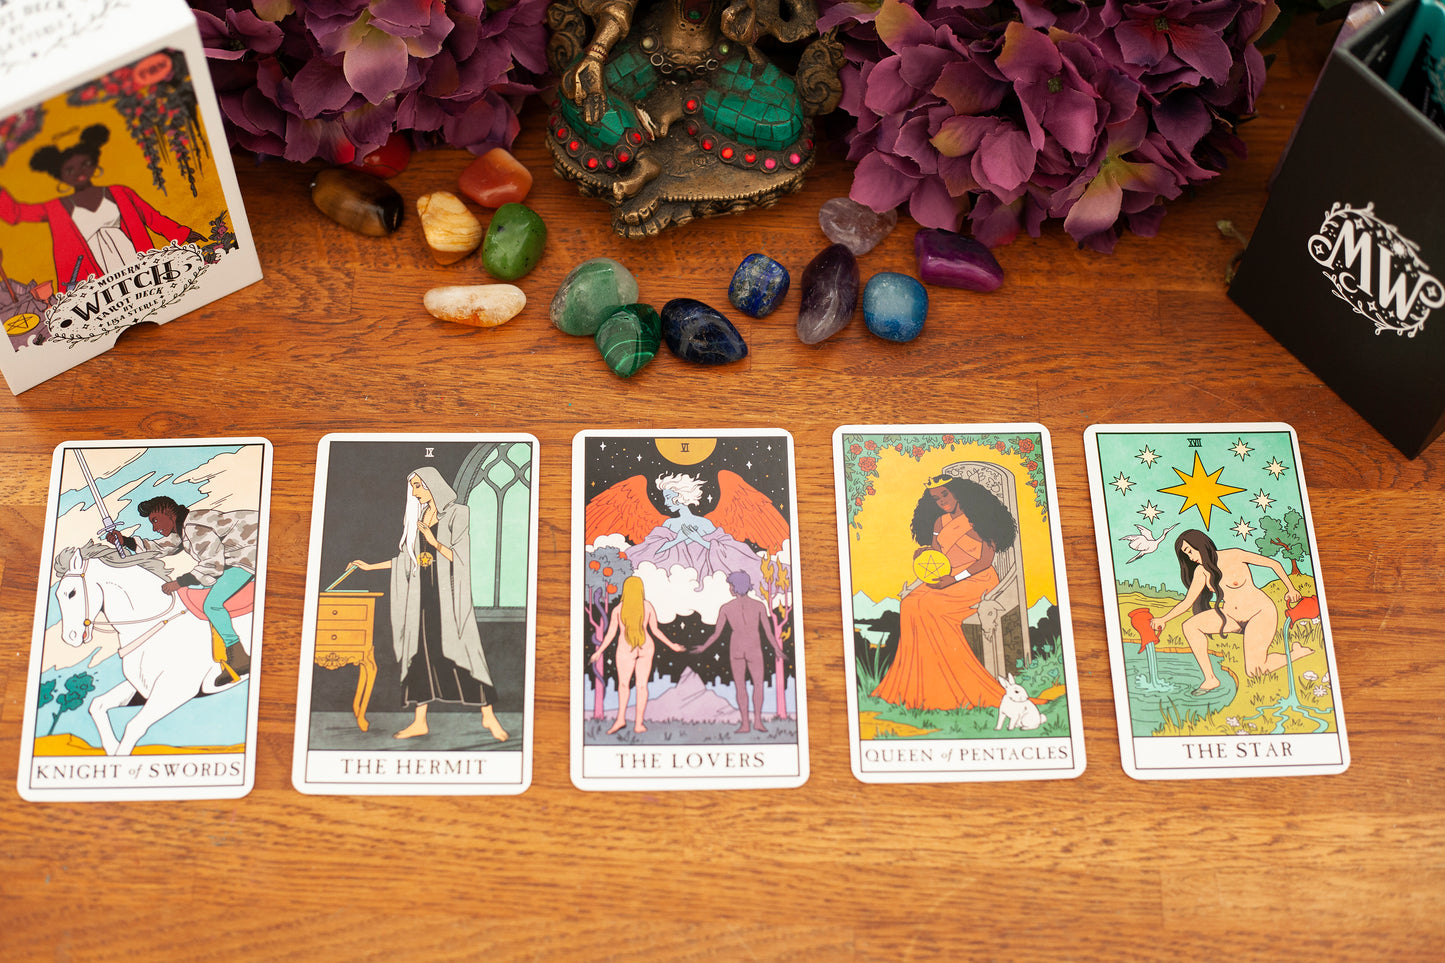 Modern Witch Tarot cards